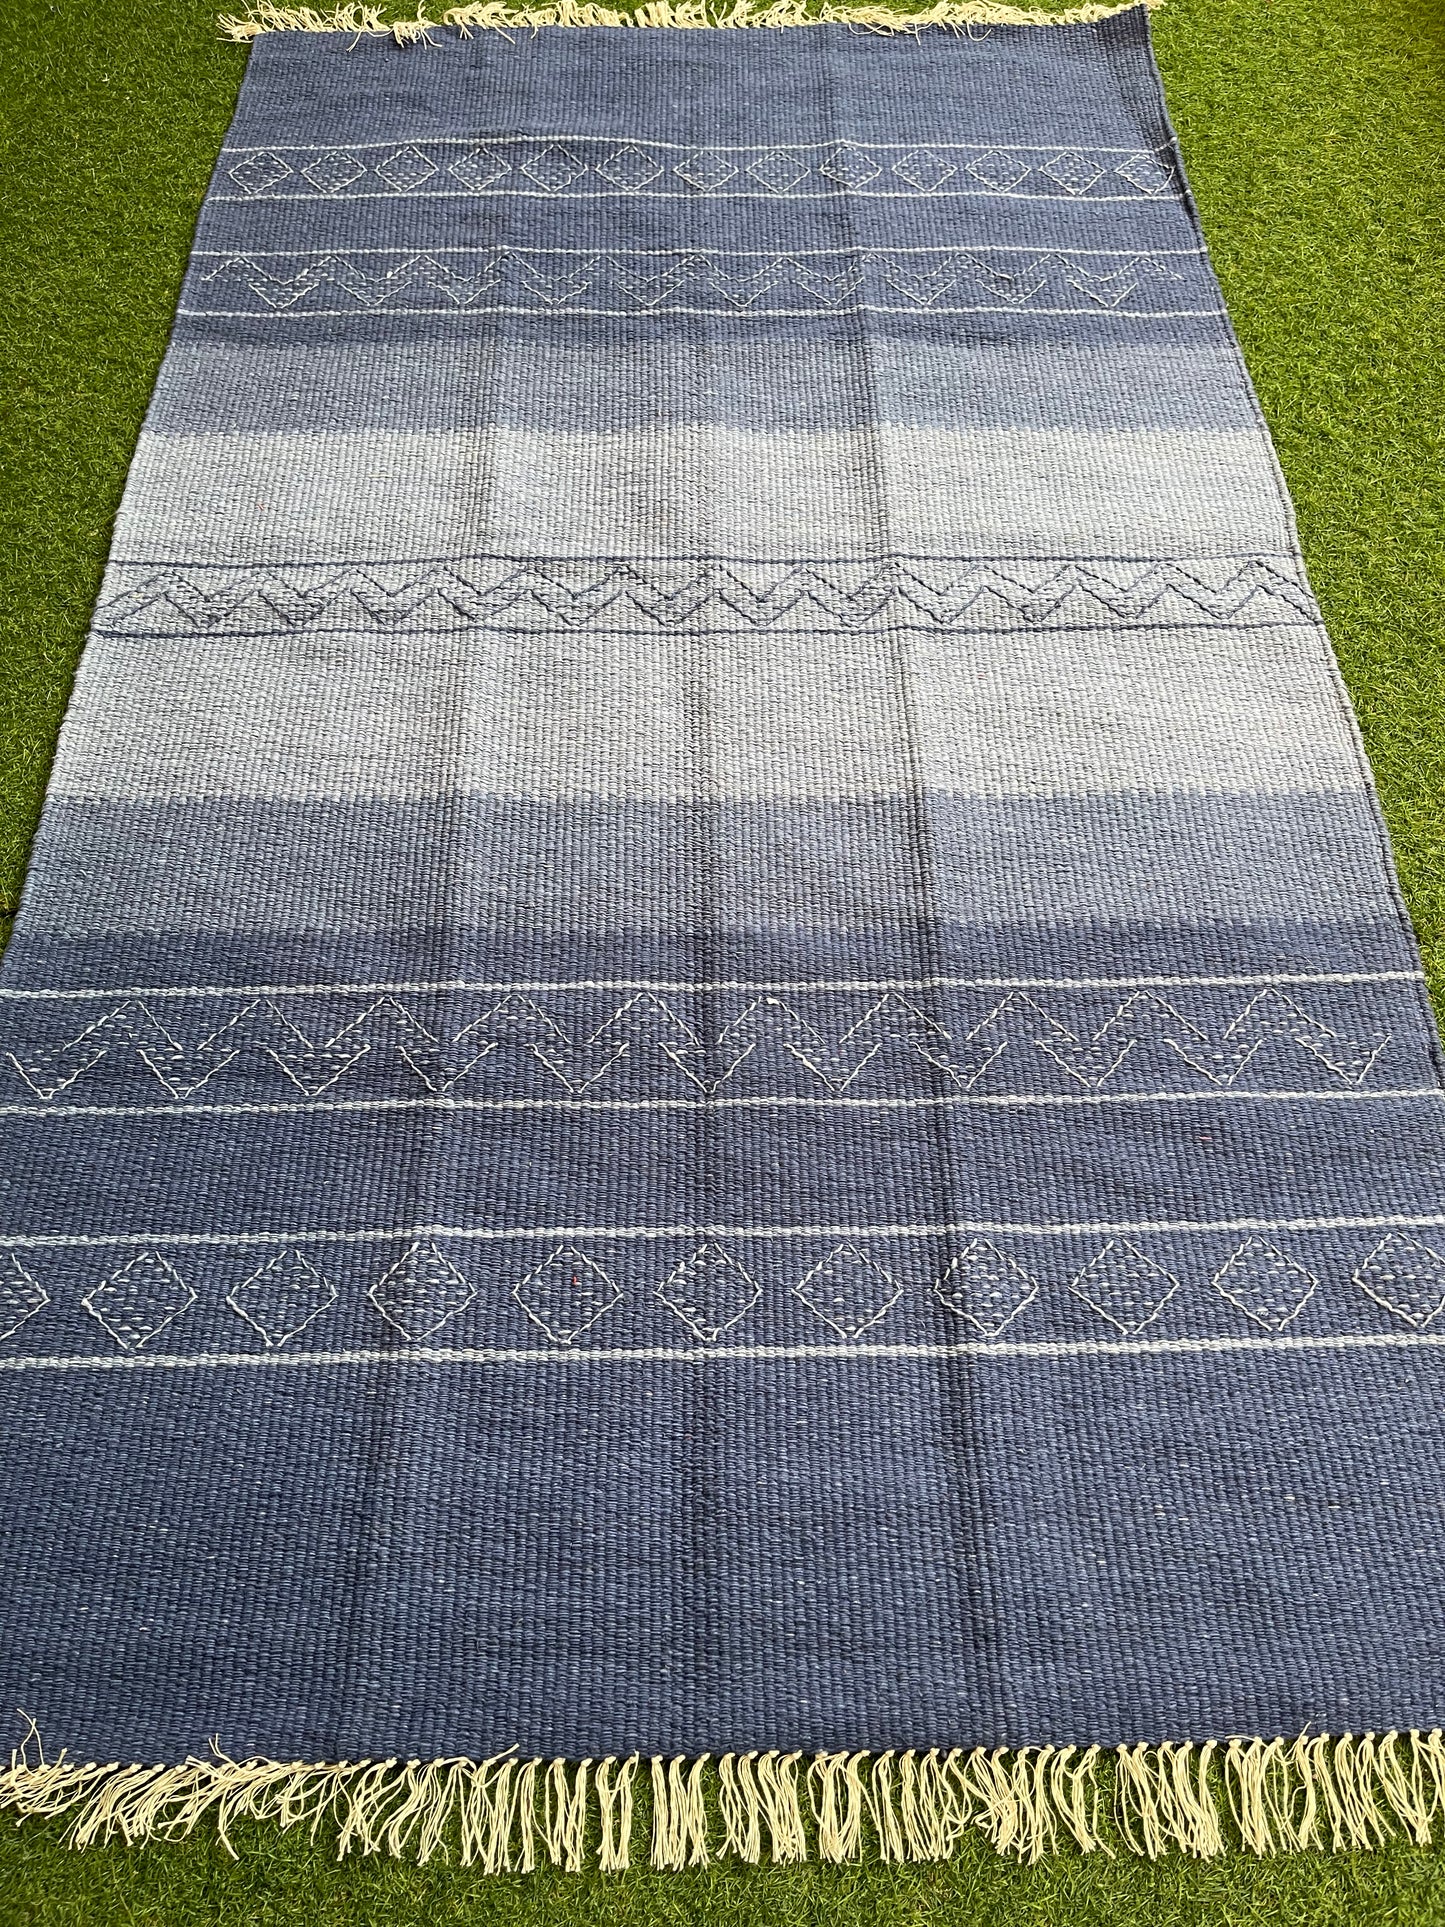 Cotton handwoven Indigo carpet / rug - 3 x 5 feet